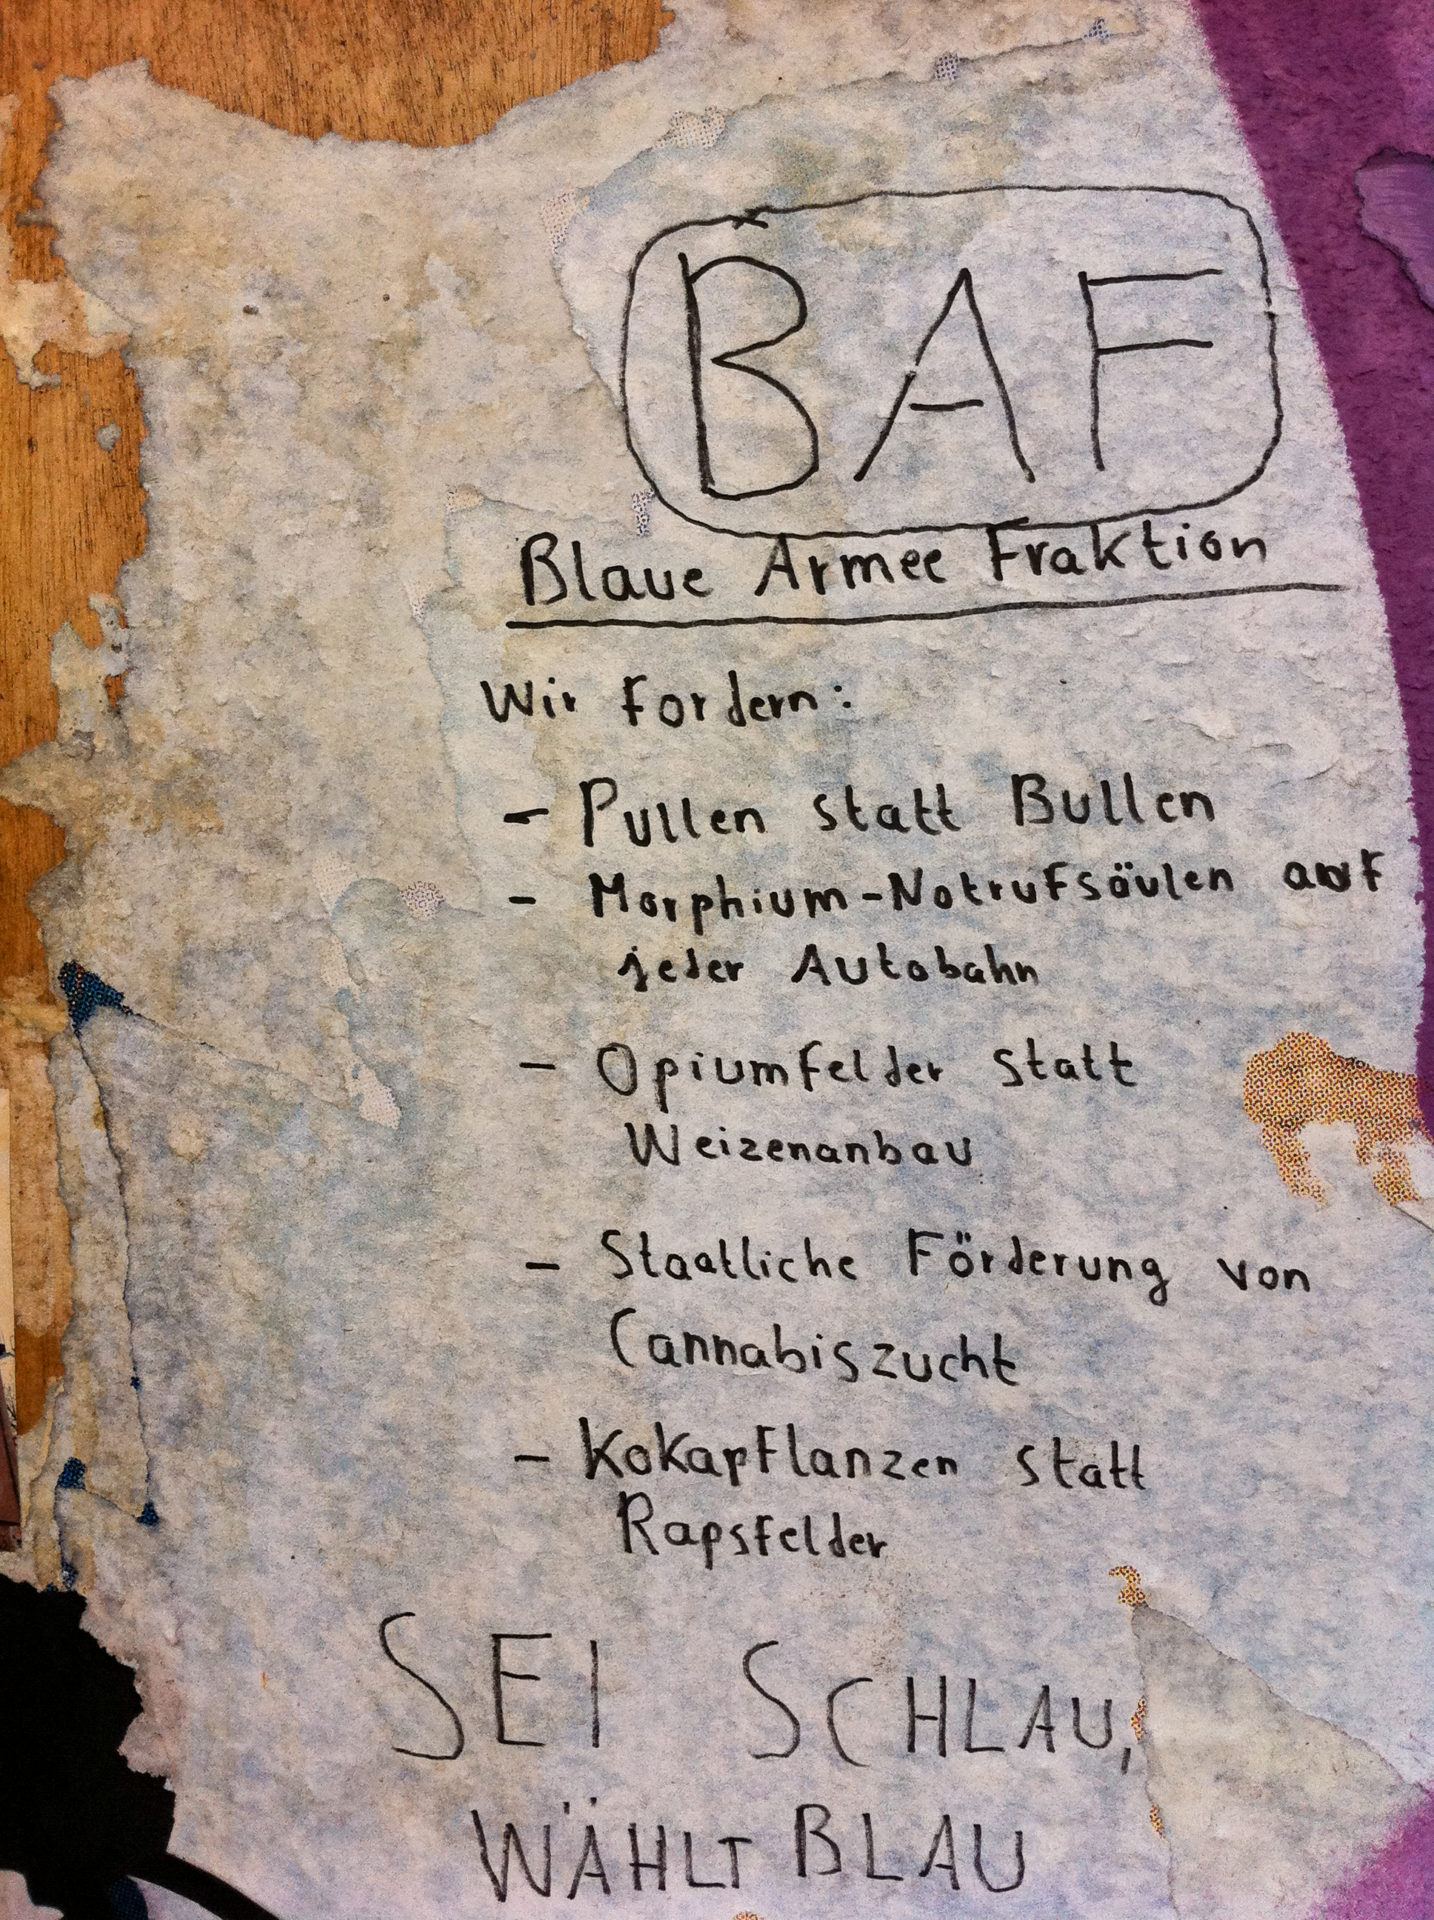 Plakat der Blauen Armee Fraktion in Berlin